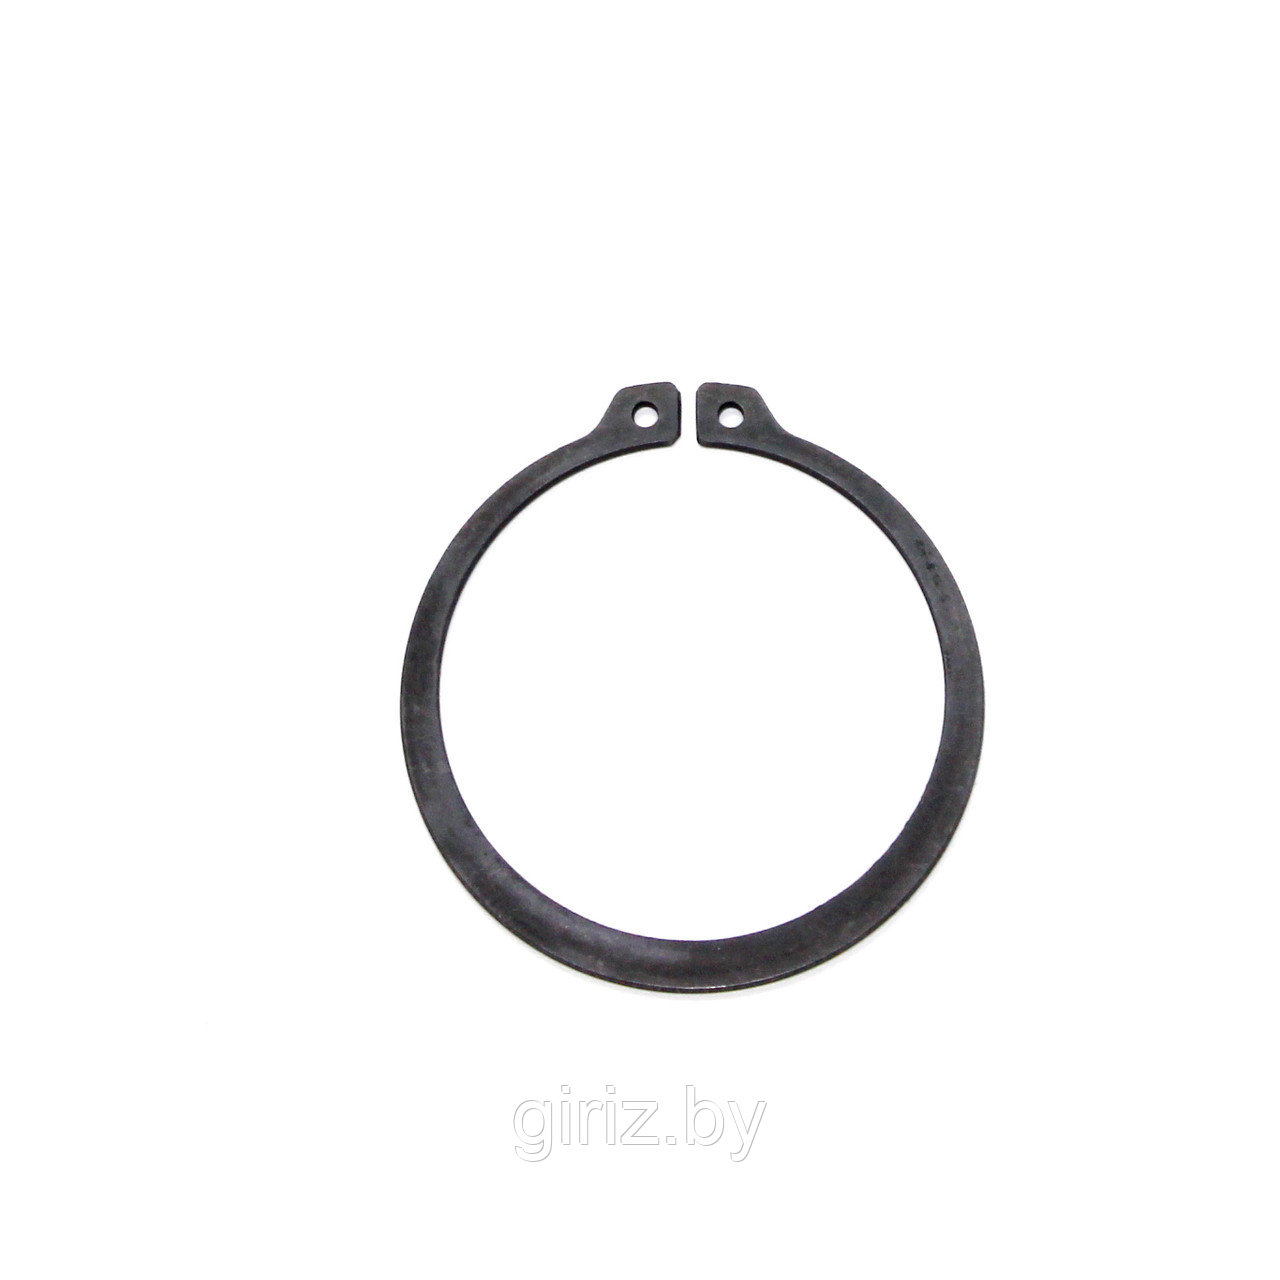 Стопорное кольцо DIN 471 4 мм (с ушками)